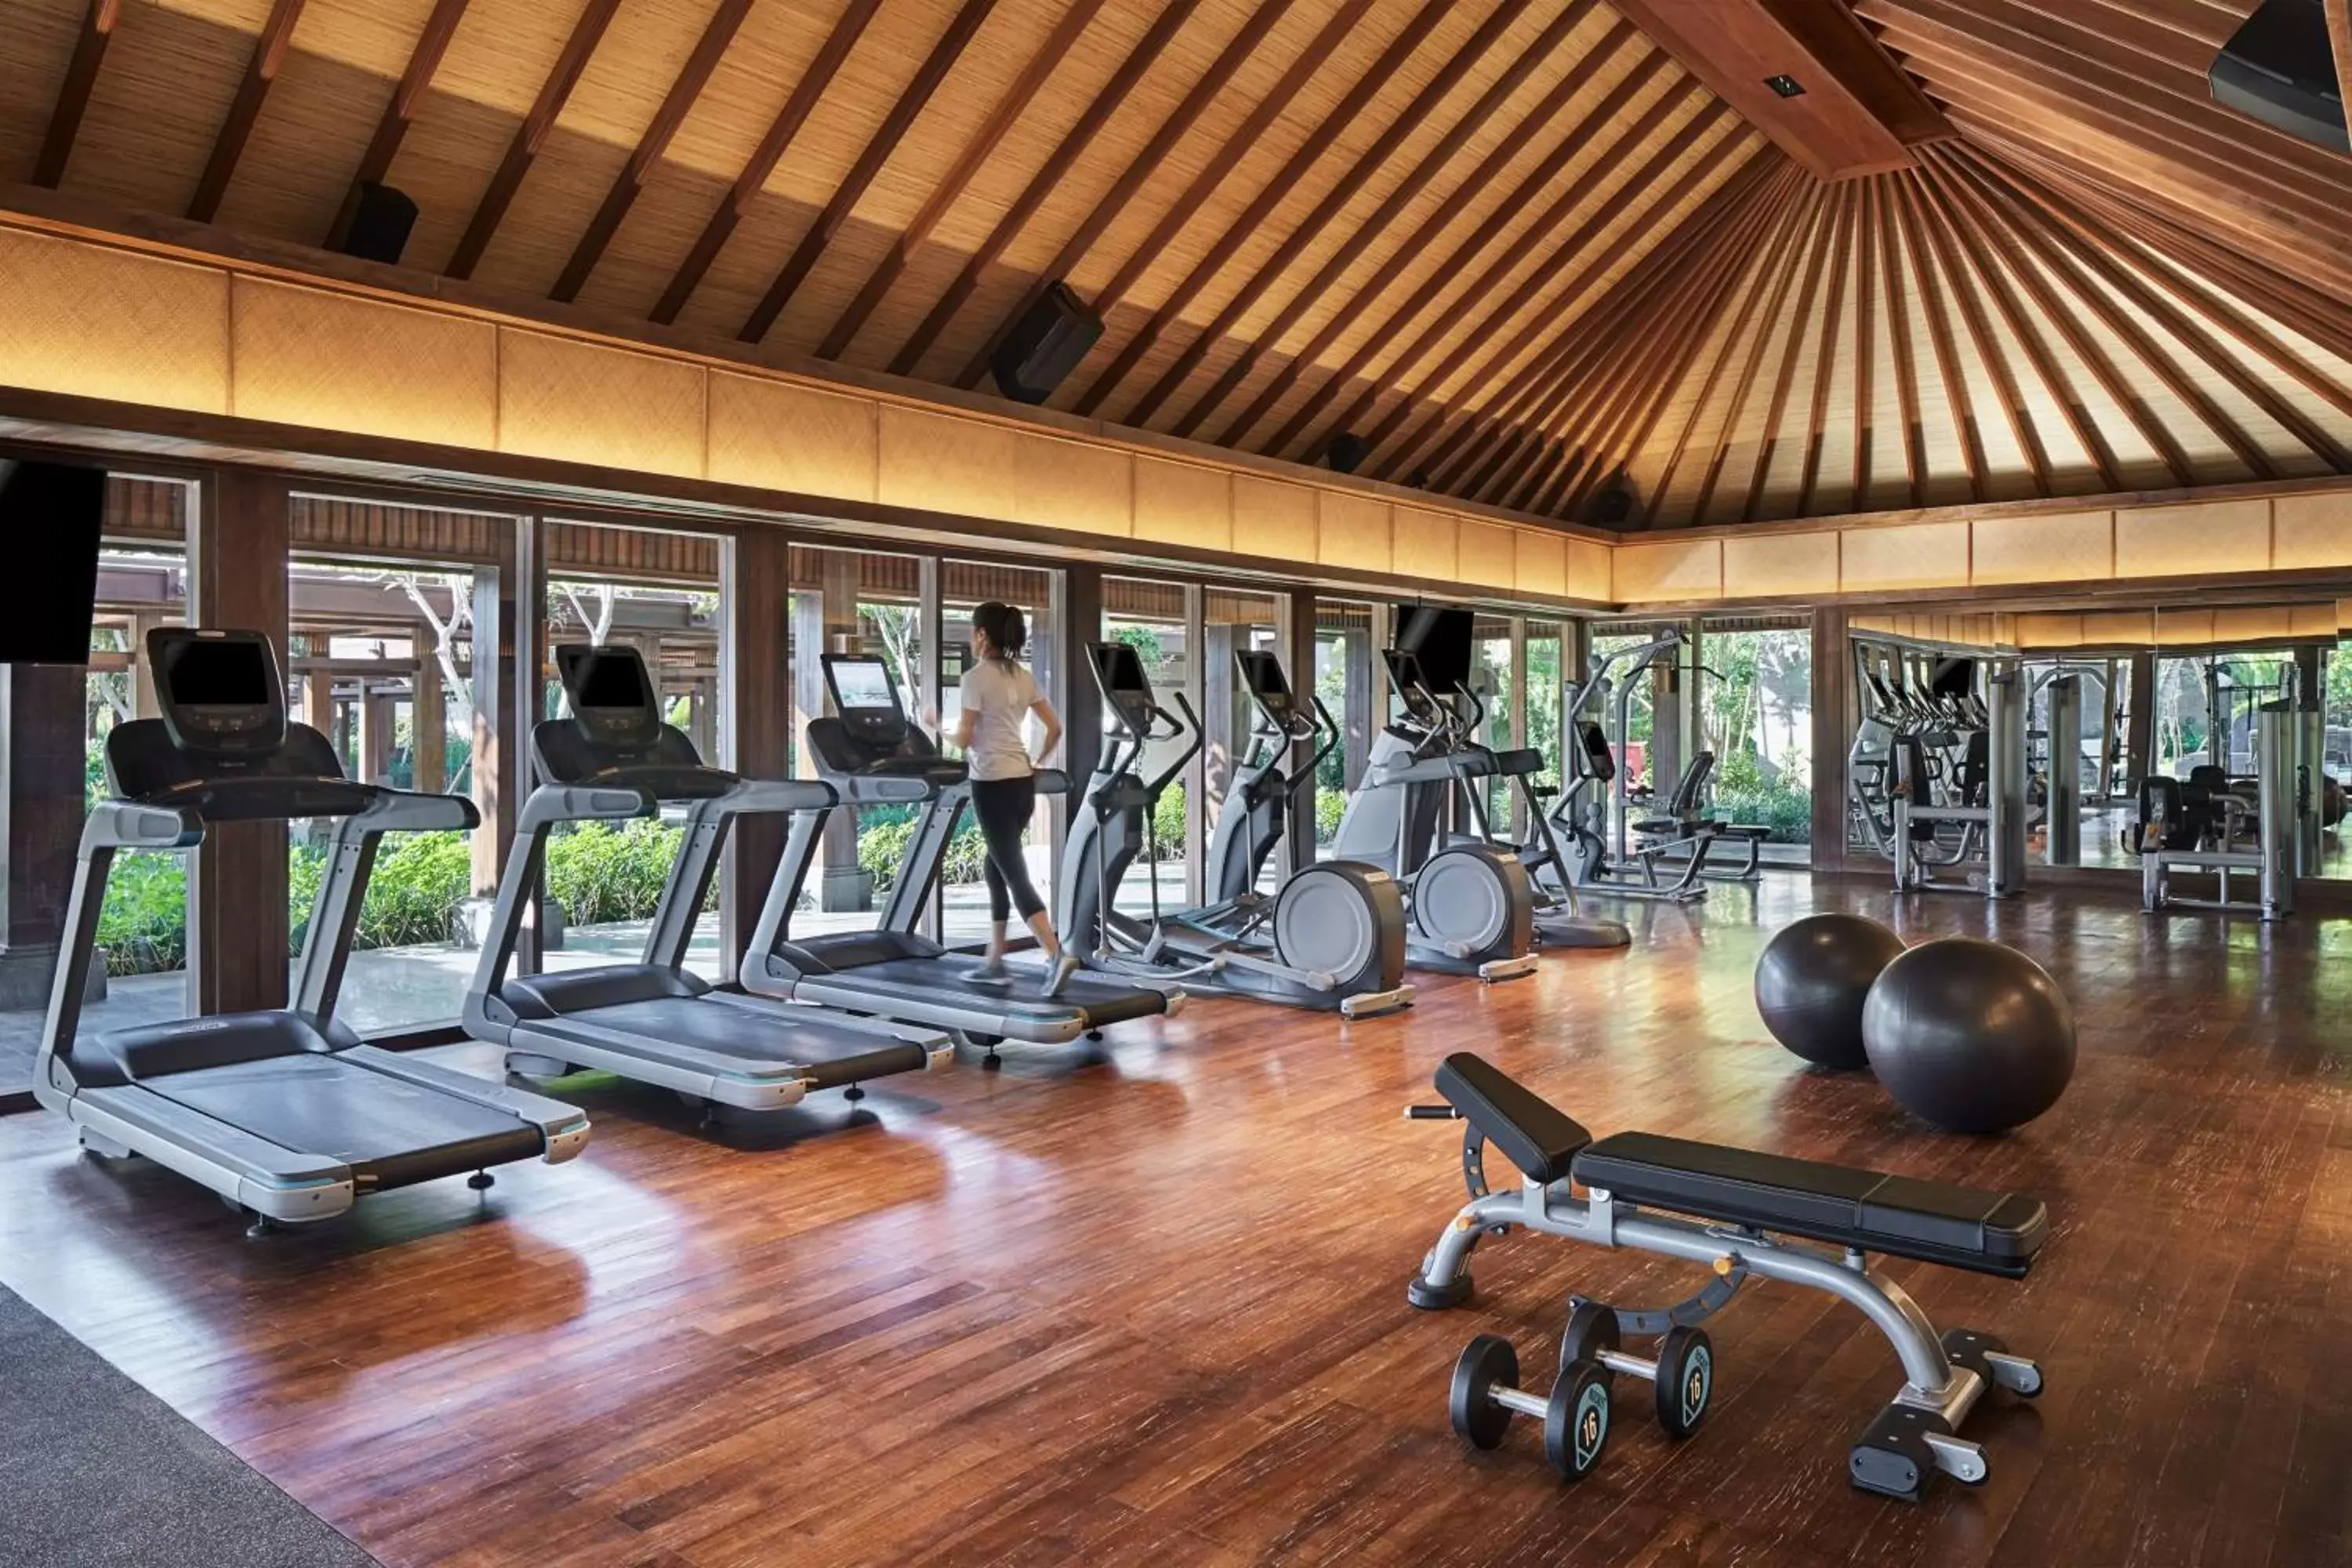 Fitness centre/facilities, Fitness Center/Facilities in Hyatt Regency Bali